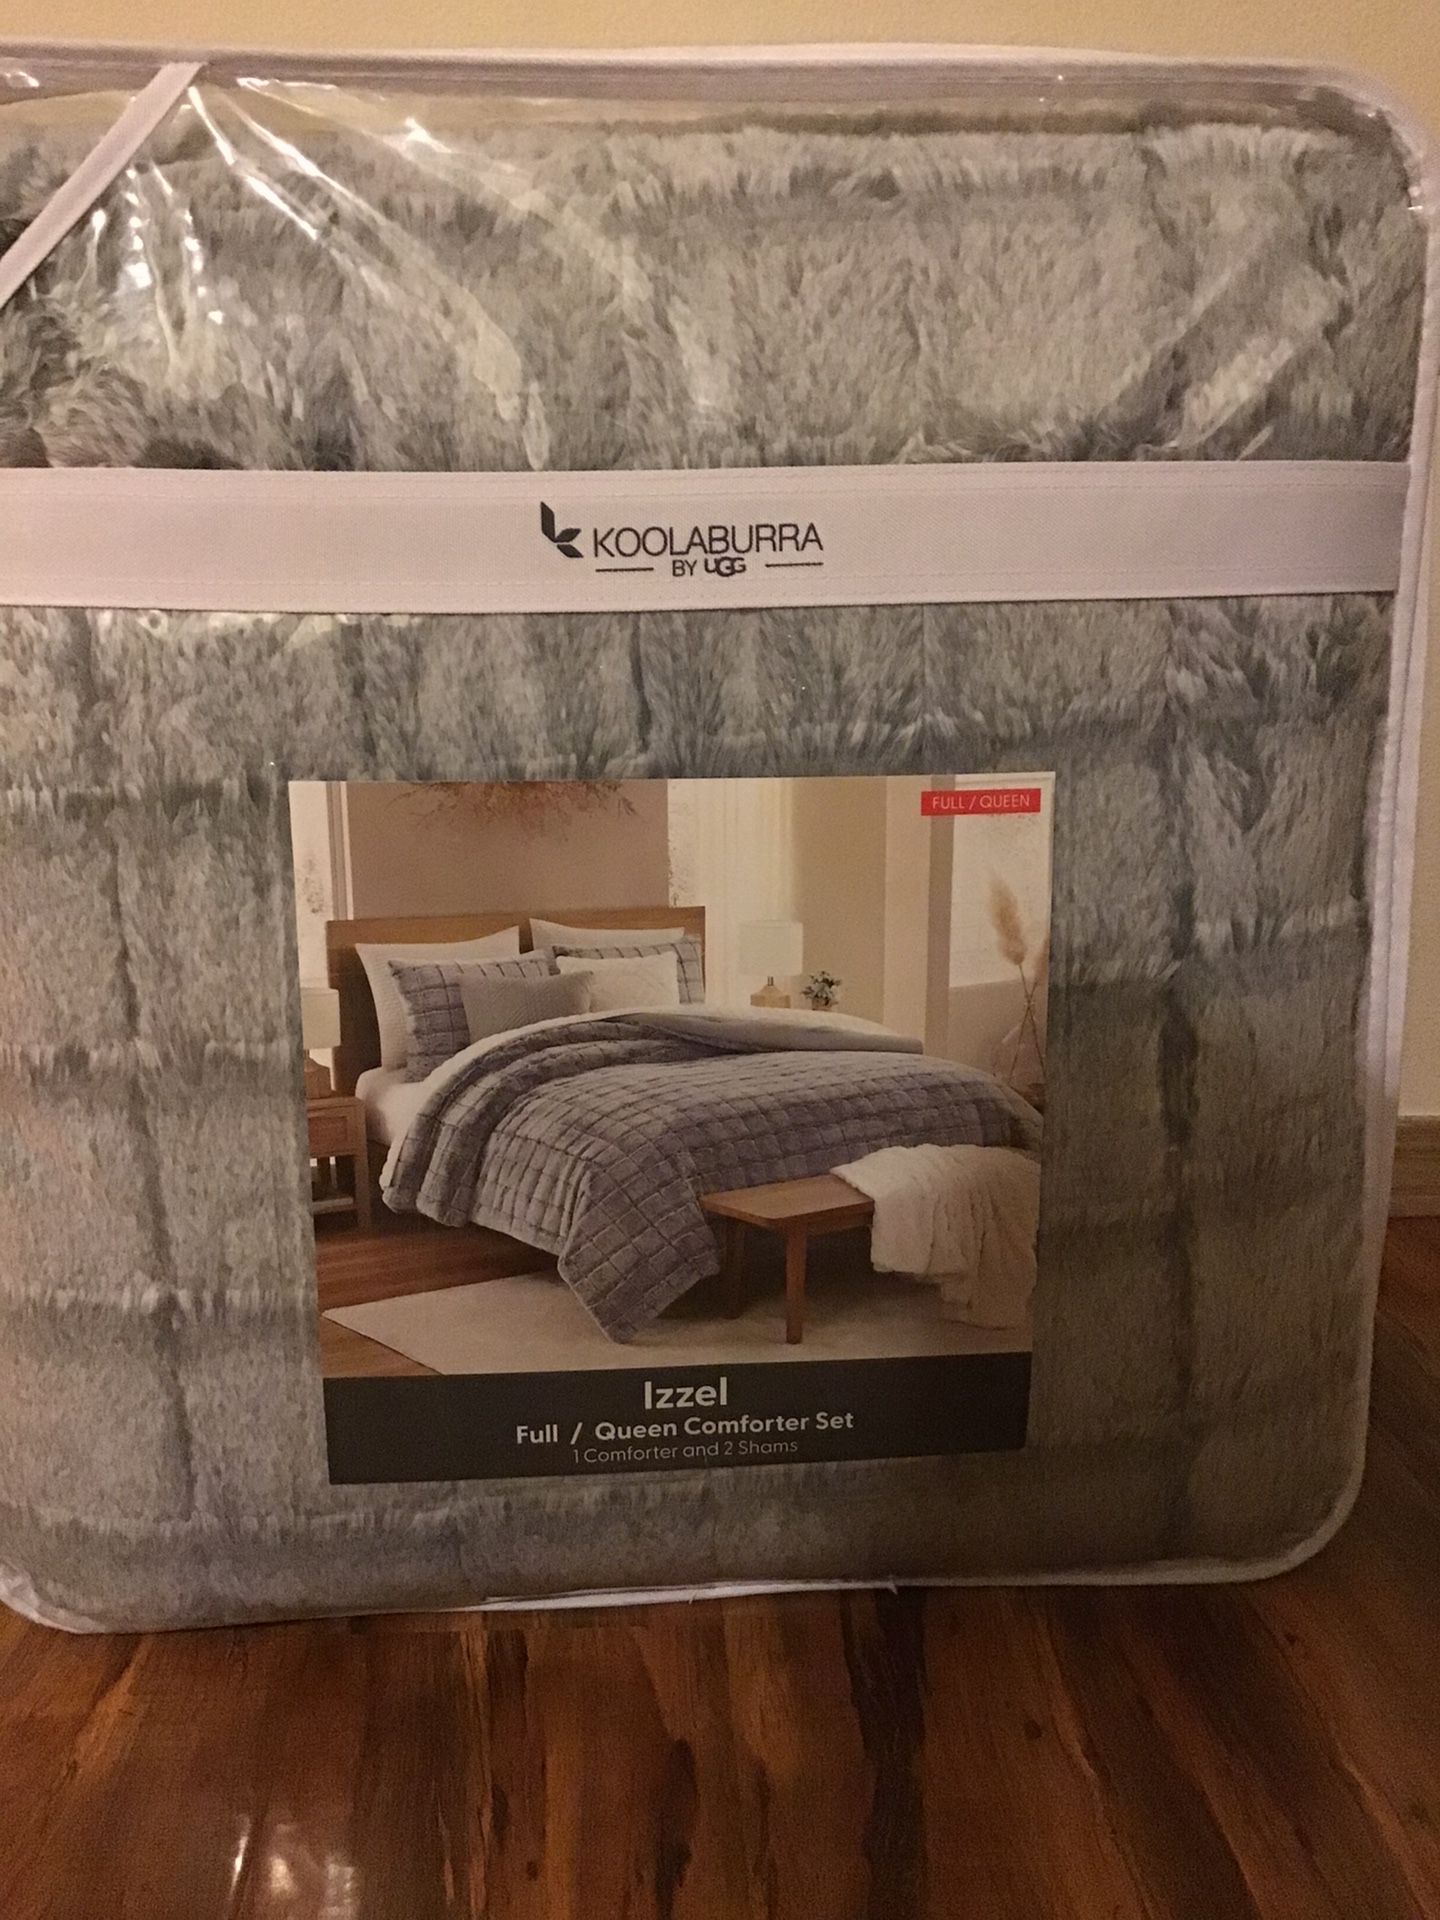 Koolaburra Ugg Comforter Set Full/ Queen Size